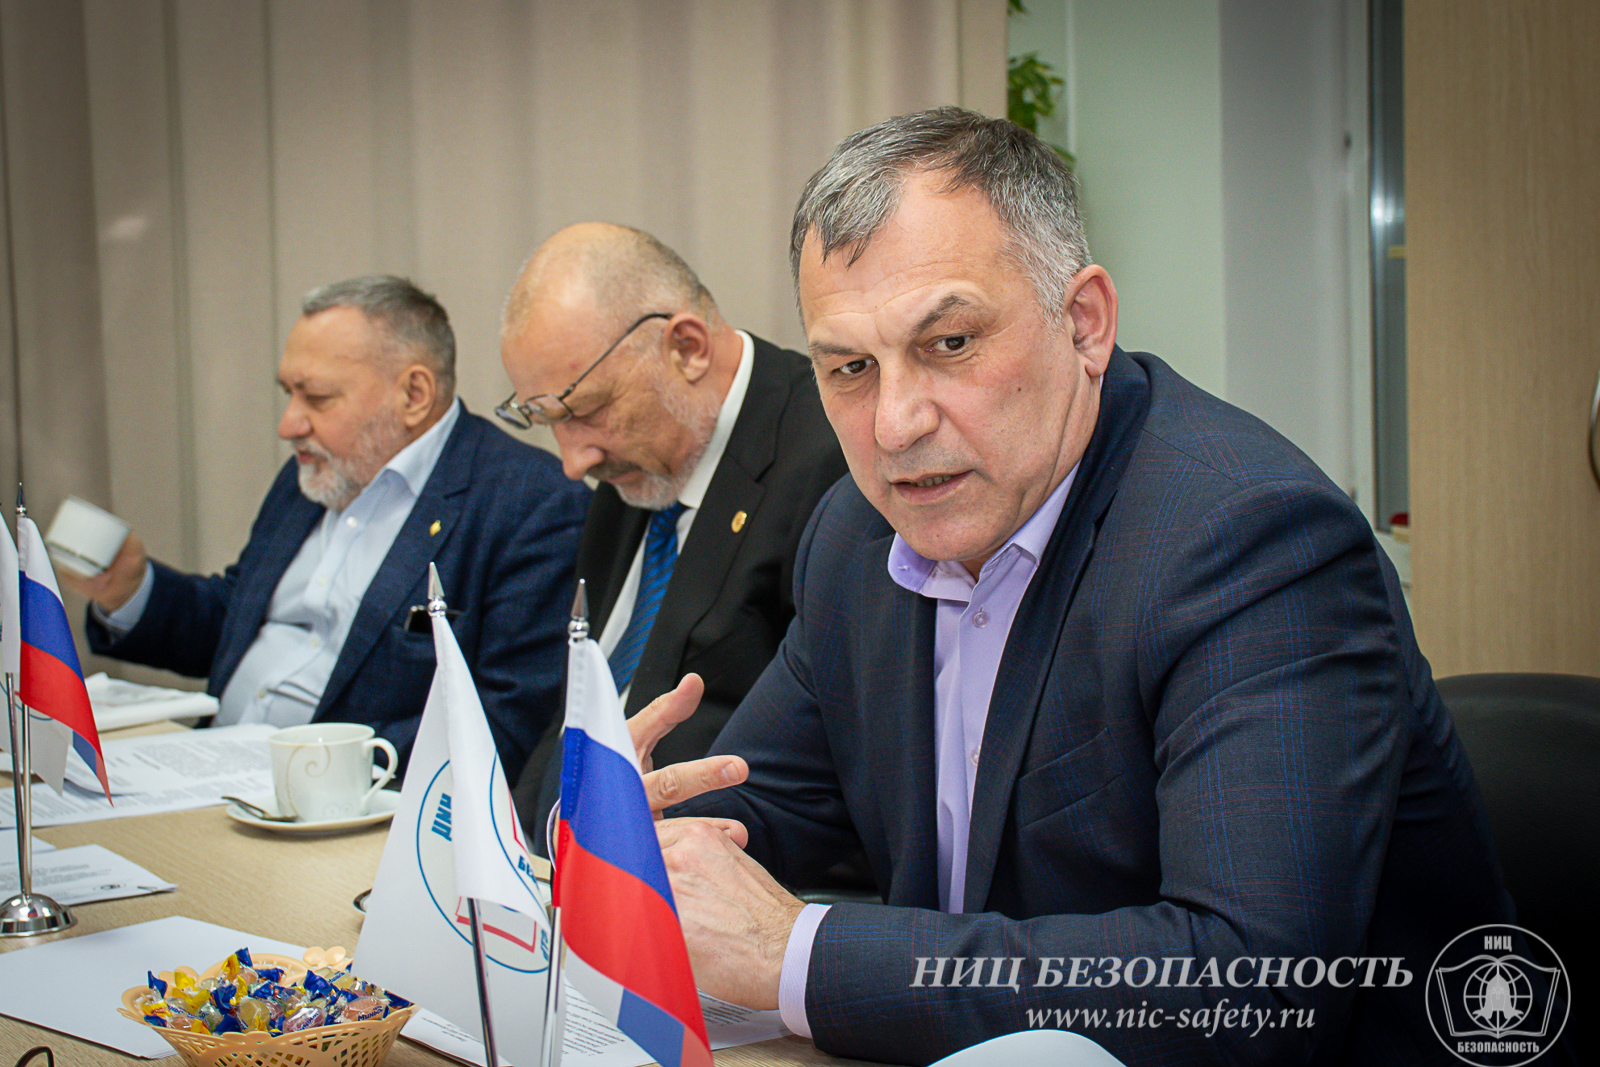 Очередное заседание Ученого совета Научно-исследовательского центра «Безопасность» состоялось в Москве | ГардИнфо